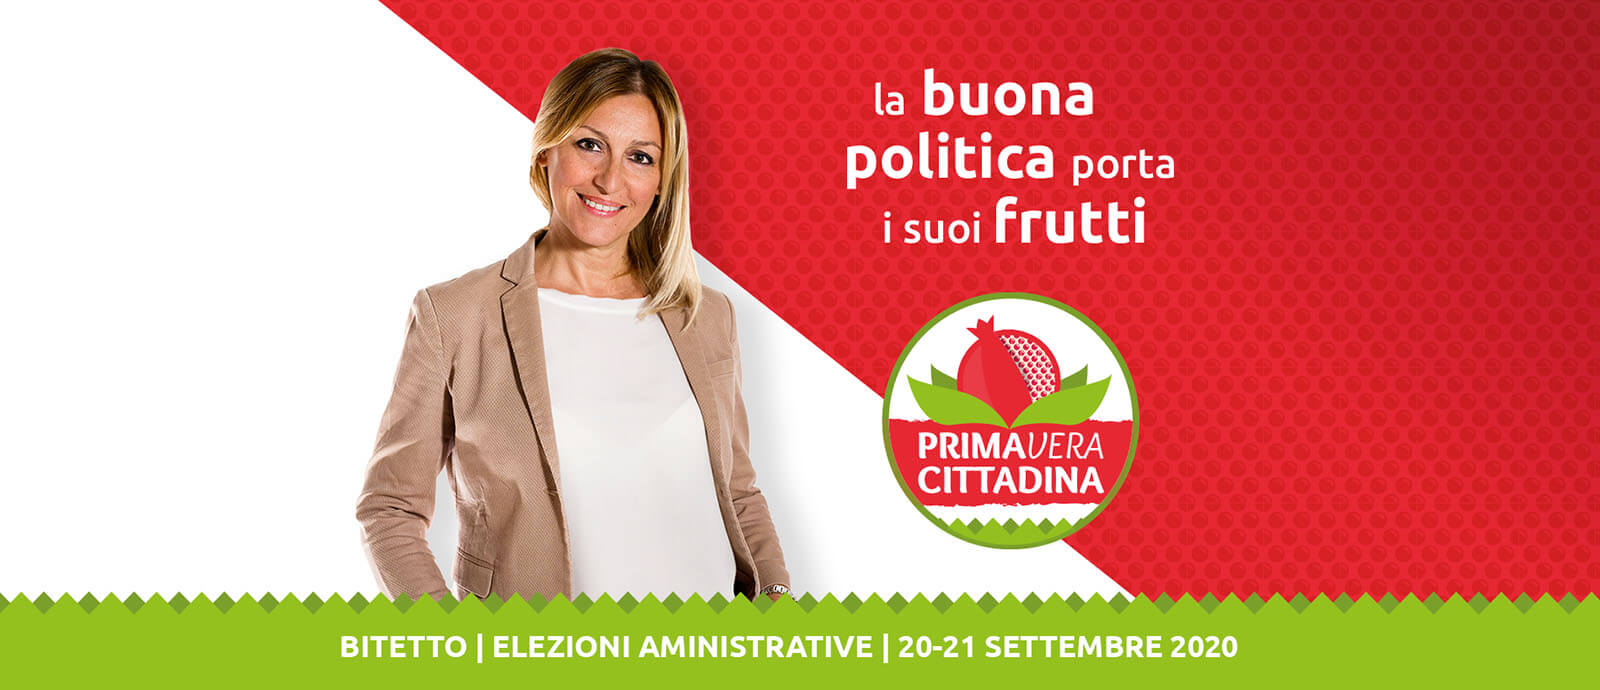 Logo PrimaVera Cittadina 2020 con visual e claim